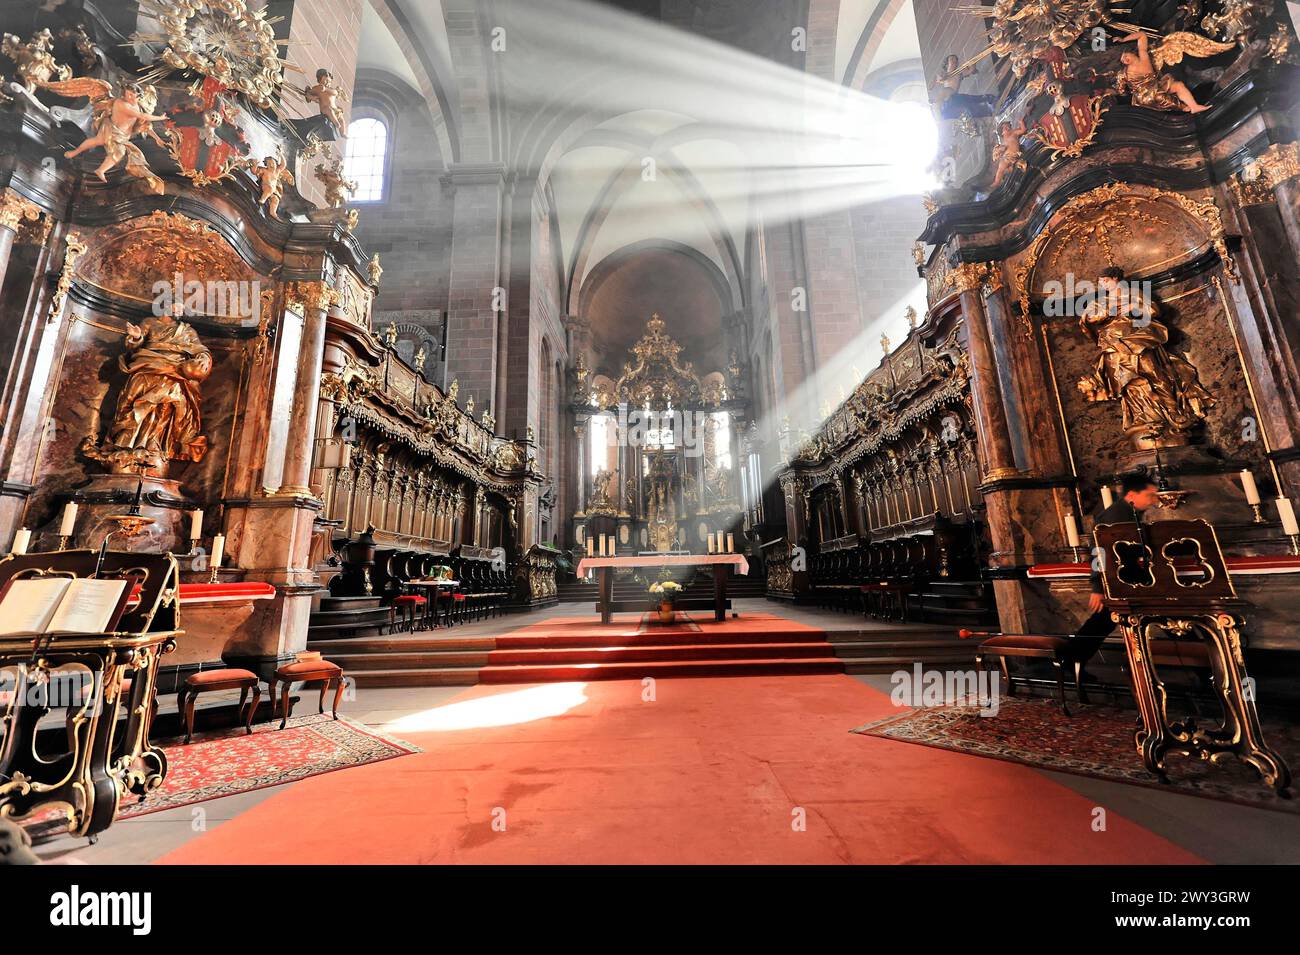 Cathédrale de Speyer, rayons de lumière tombent sur le tapis rouge dans une église avec des sculptures baroques, cathédrale de Speyer, site du patrimoine mondial de l'UNESCO, fondation Banque D'Images